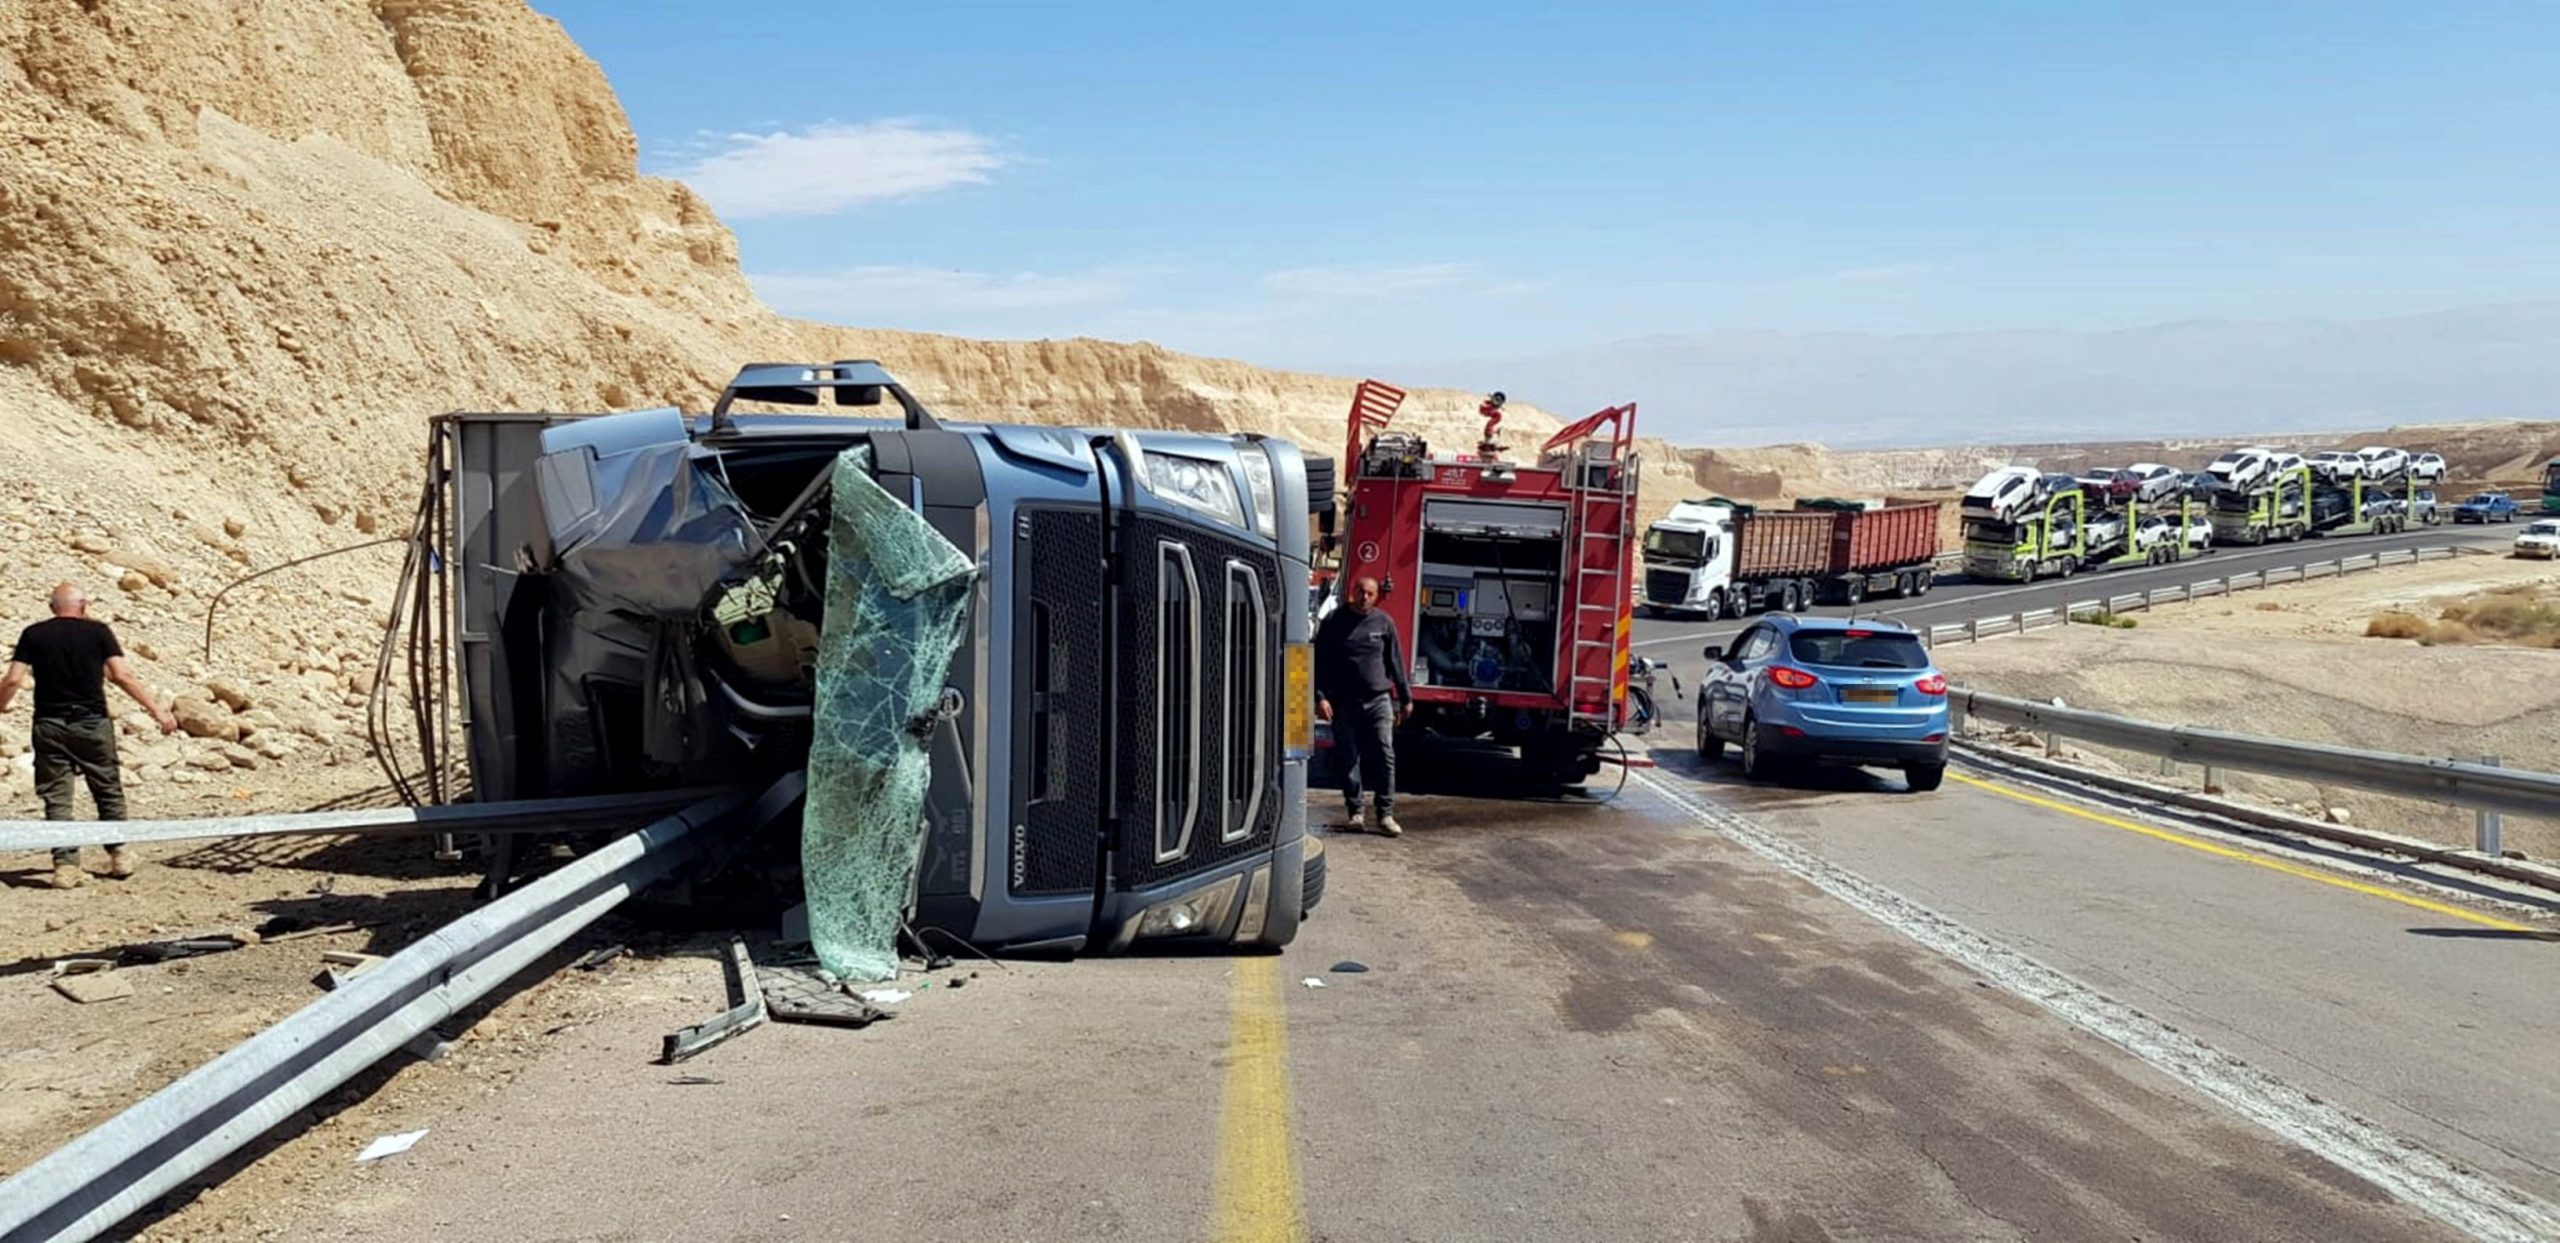 שוב תאונה  על כביש 90 בערבה – משאית להובלת בקר התהפכה – הנהג פונה במצב בינוני לסורוקה